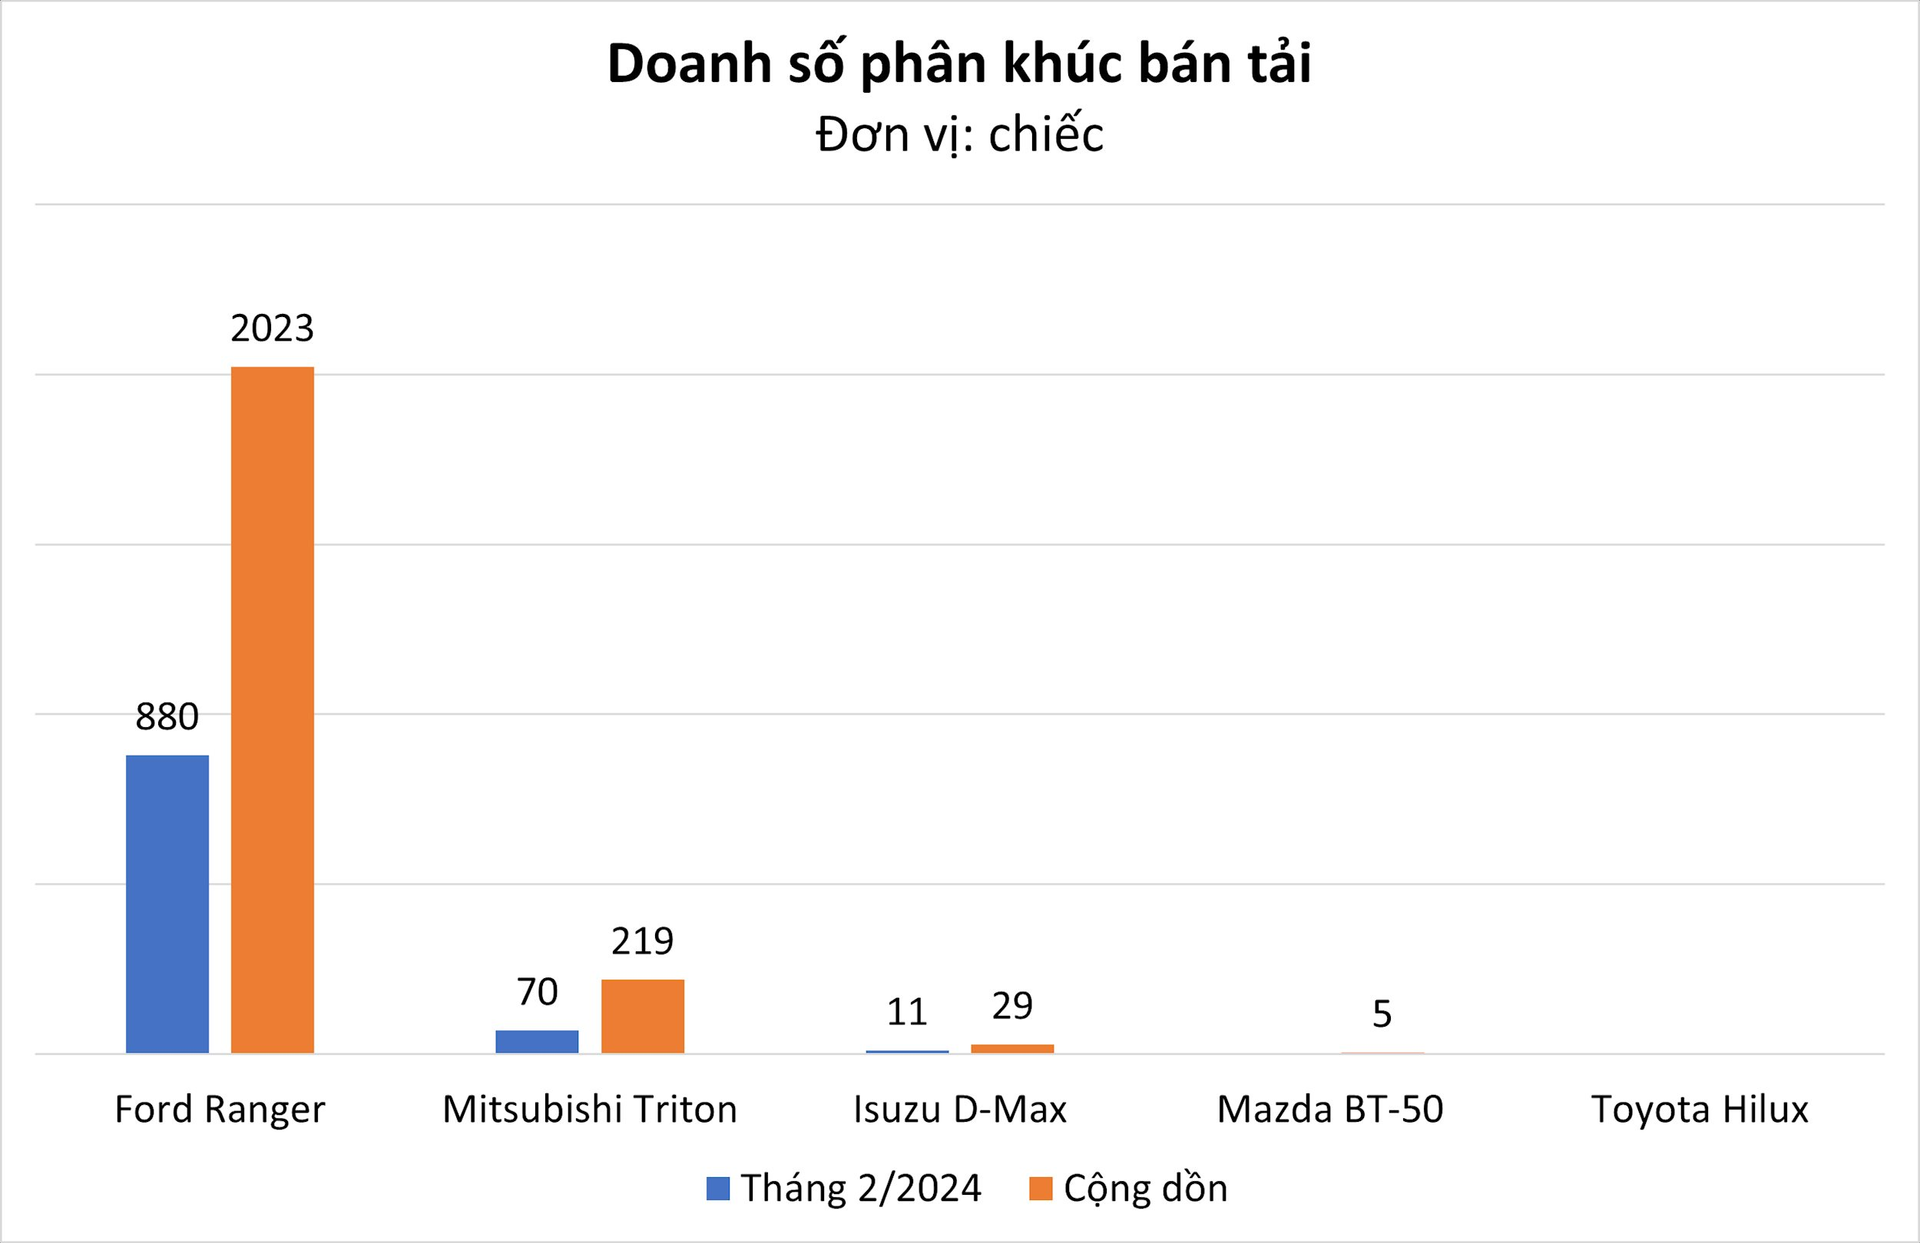 Không hổ là 'vua doanh số' toàn thị trường Việt Nam, mẫu xe này bán gấp 10 lần toàn bộ đối thủ cùng phân khúc cộng lại- Ảnh 2.